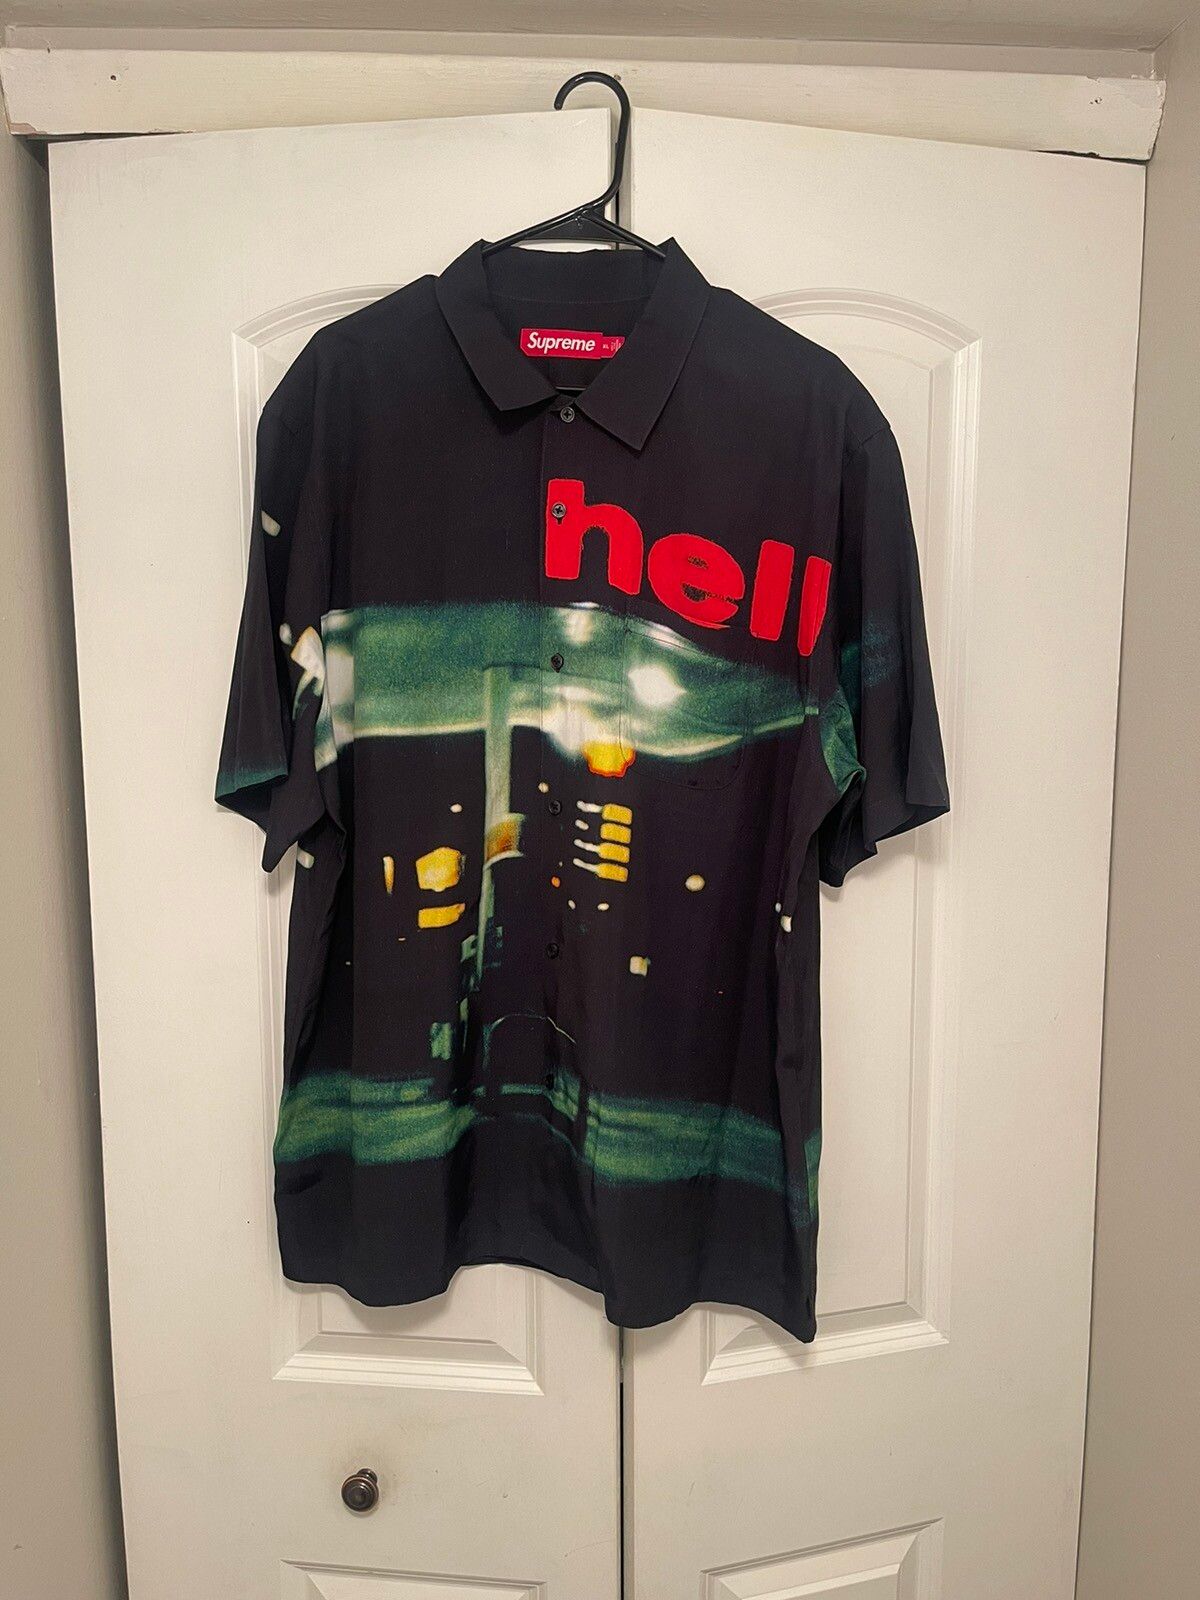 Supreme Supreme Hell S/S Shirt | Grailed